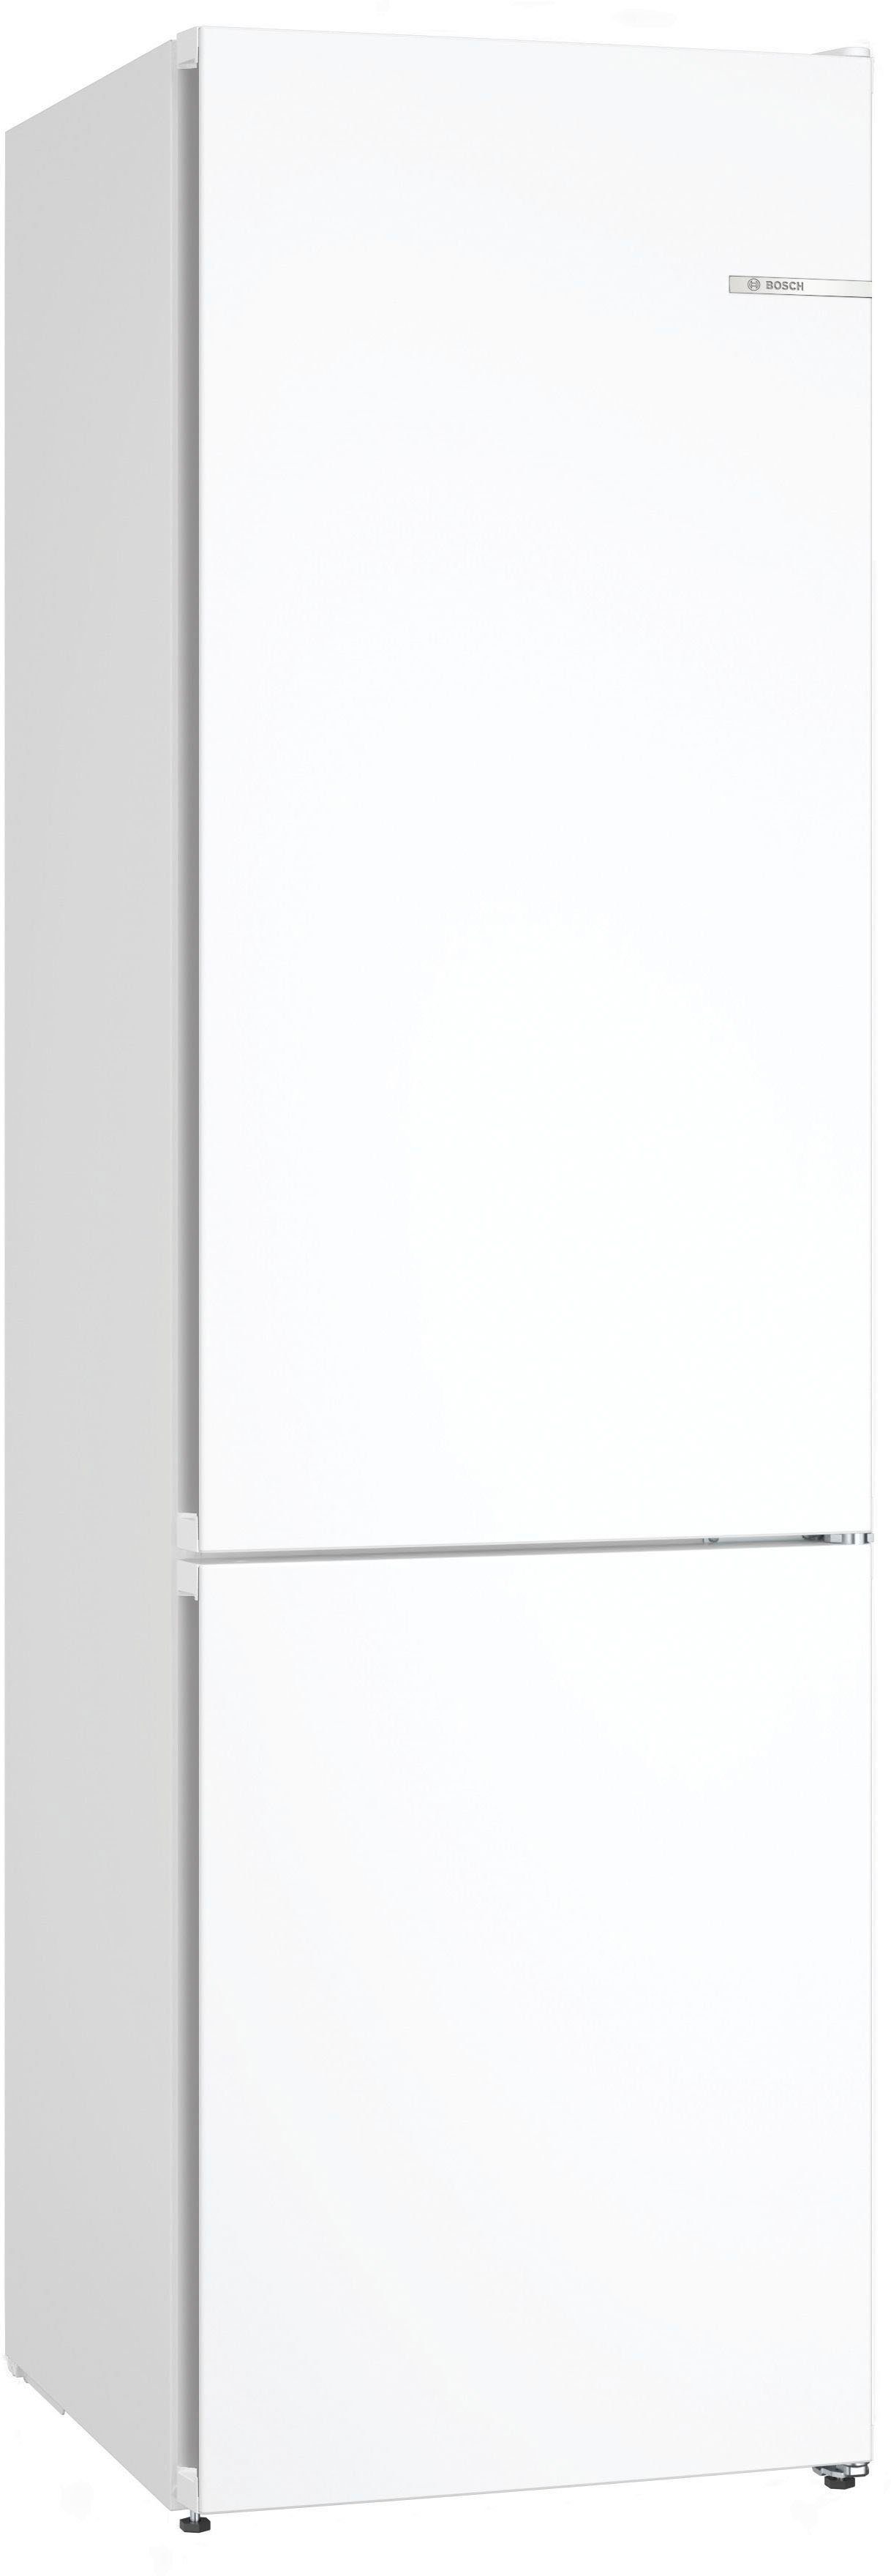 BOSCH Kühl-/Gefrierkombination KGN392WCF, 203 cm hoch, 60 cm breit, Zwei  Kühlkreisläufe: getrennt steuerbarer Kühl- und